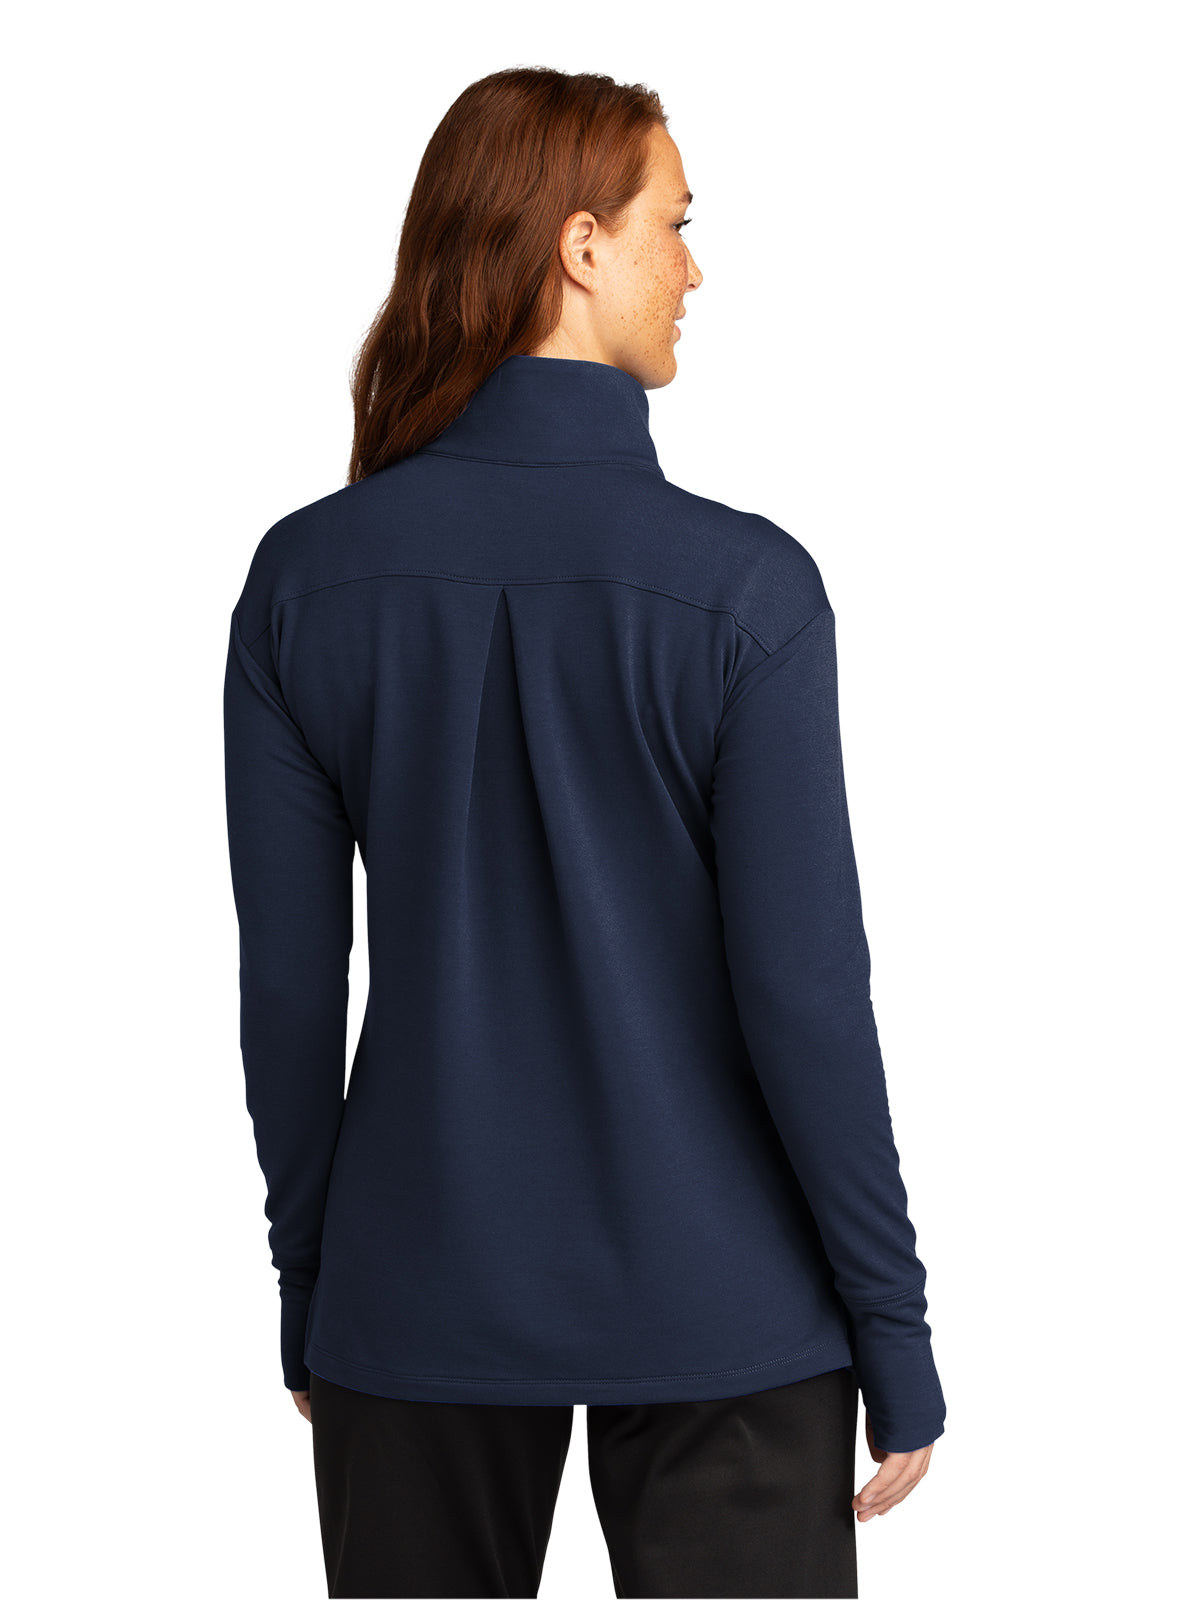 Women's Flex Fleece 1/4 Zip Sweatshirt